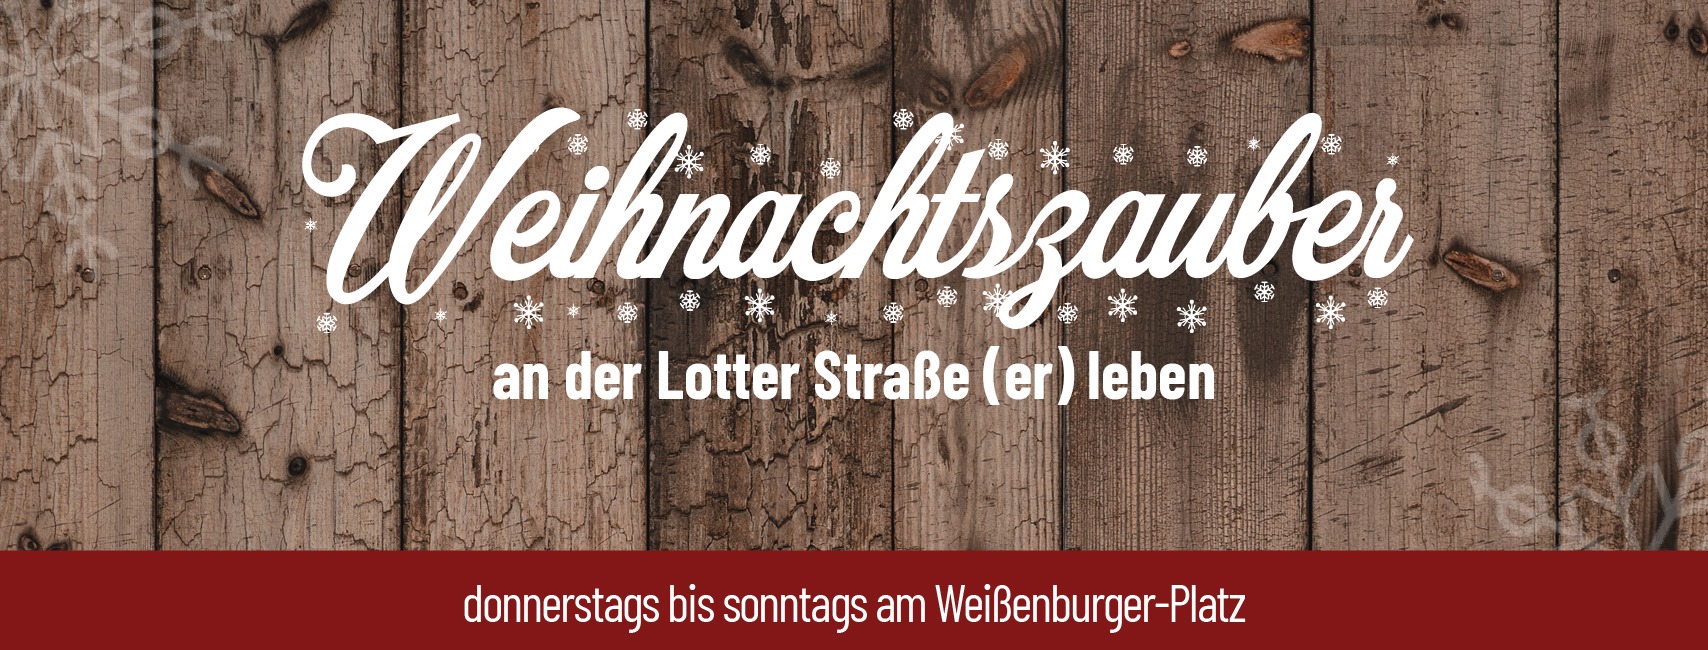 Weihnachtszauber am Weissenburgerplatz in der Lotter-Strasse